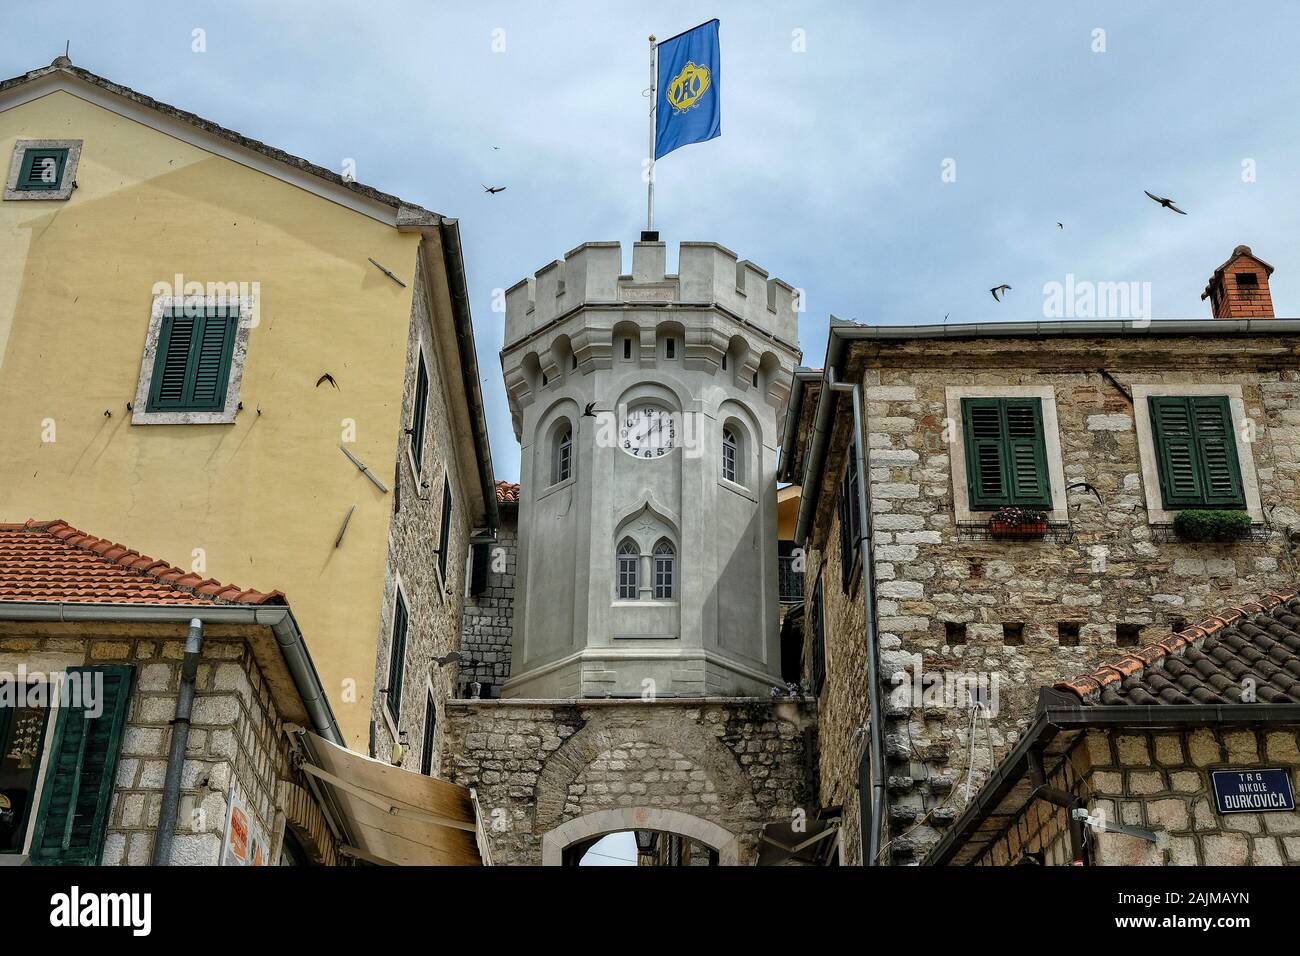 Herceg Novi, Montenegro - Juni 2019: Altes Stadttor mit dem kleinen Uhrturm umgeben von alten Häusern am 22. Juni 2019 in Herceg Novi, Montenegro. Stockfoto